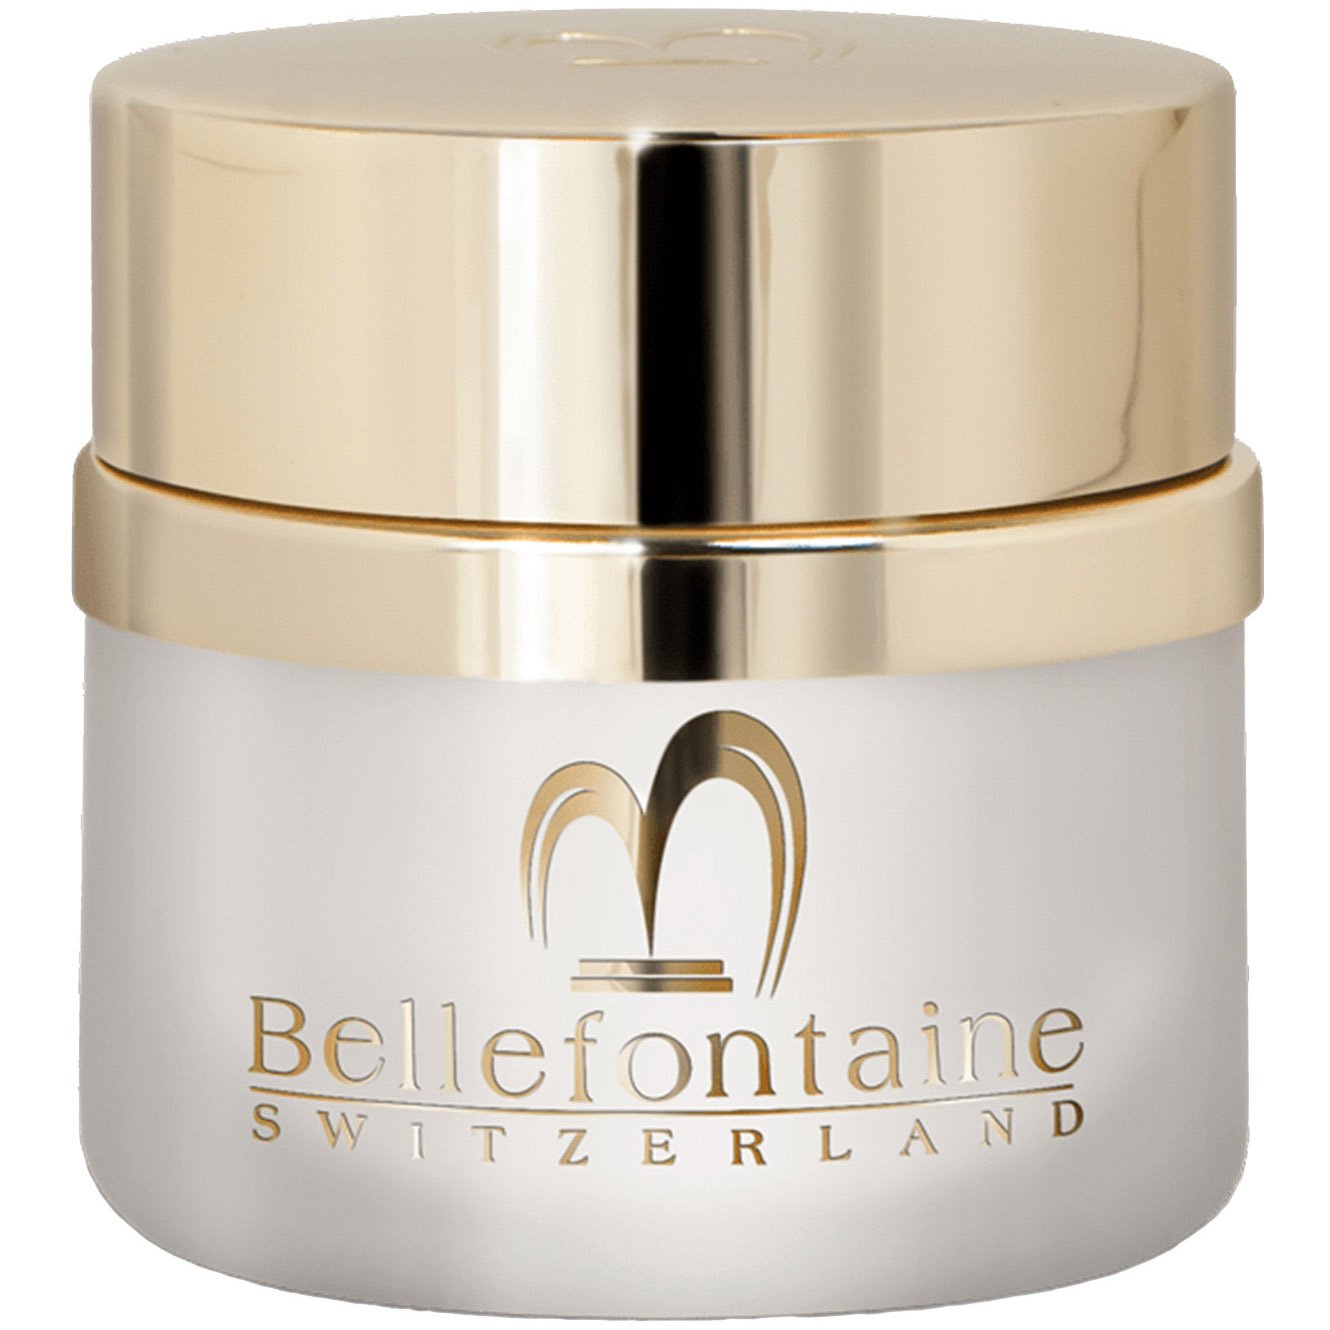 Омолоджувальний денний крем для обличчя Bellefontaine Nutri-Plus, для сухої шкіри, 50 мл - фото 1